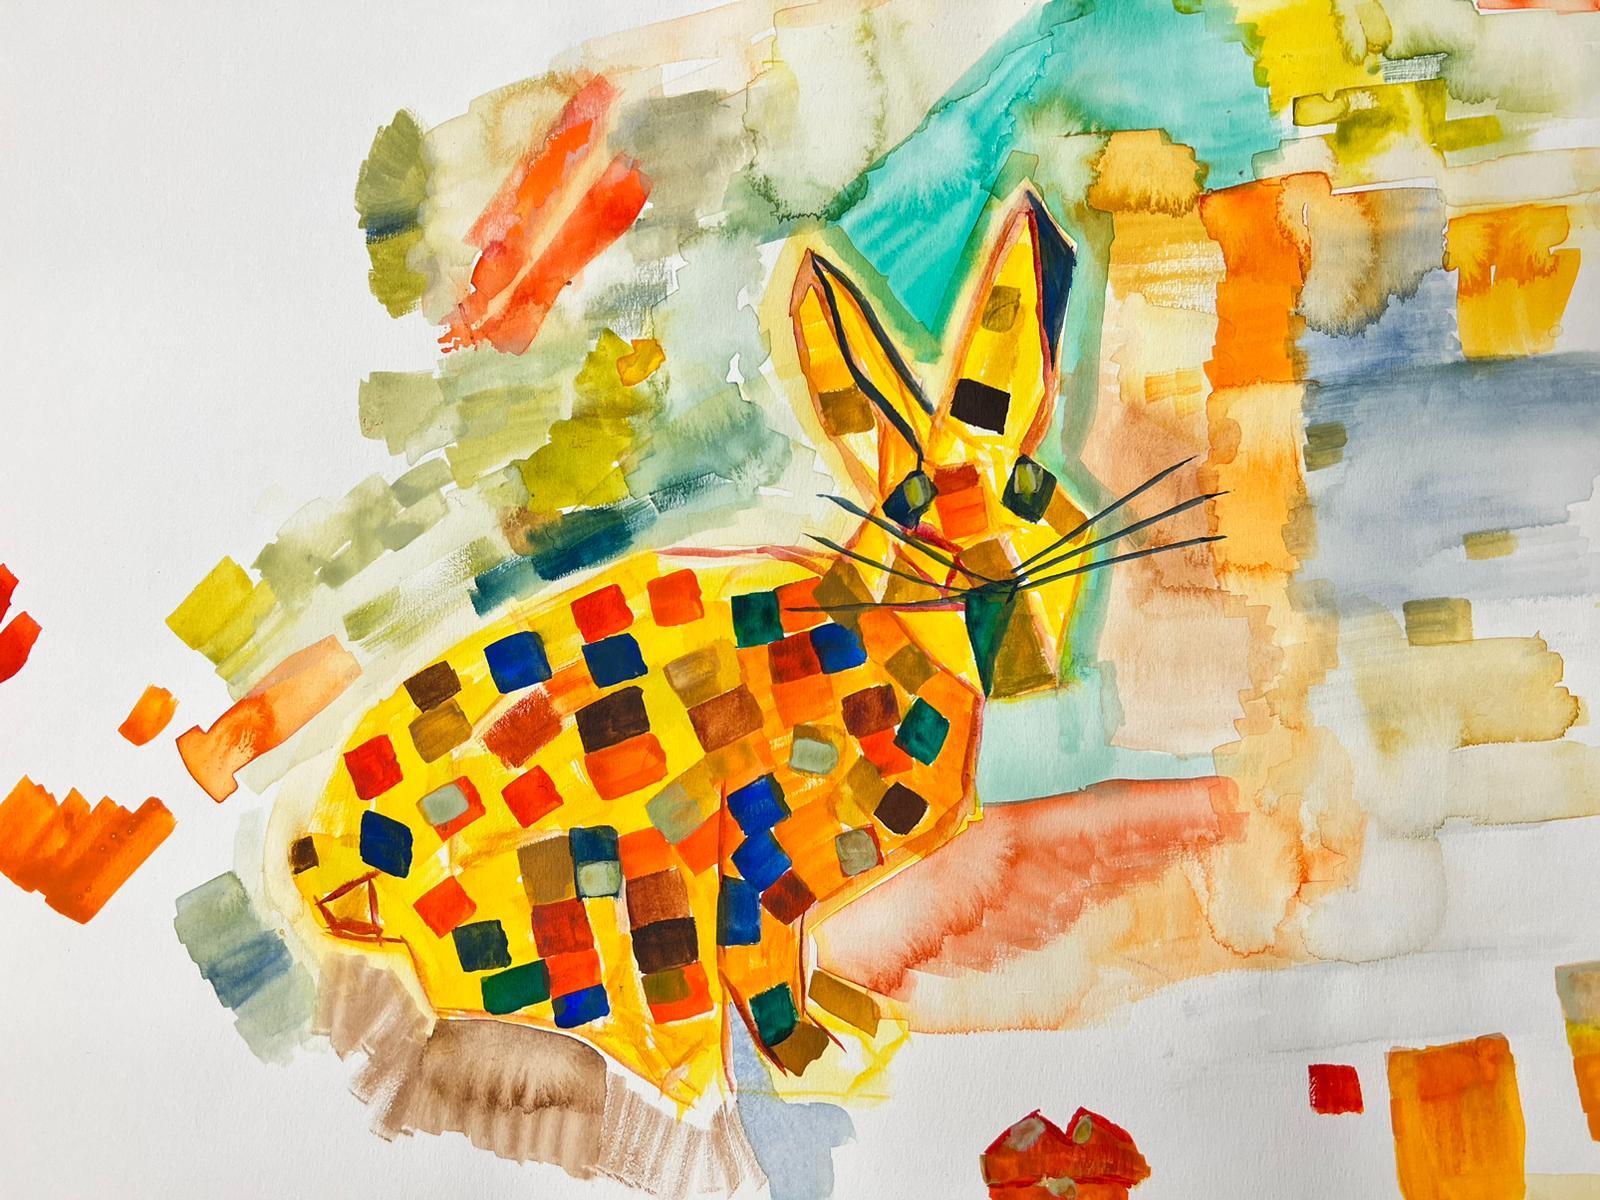 March Hare - Peinture cubiste abstraite irlandaise contemporaine colorée d'un hare